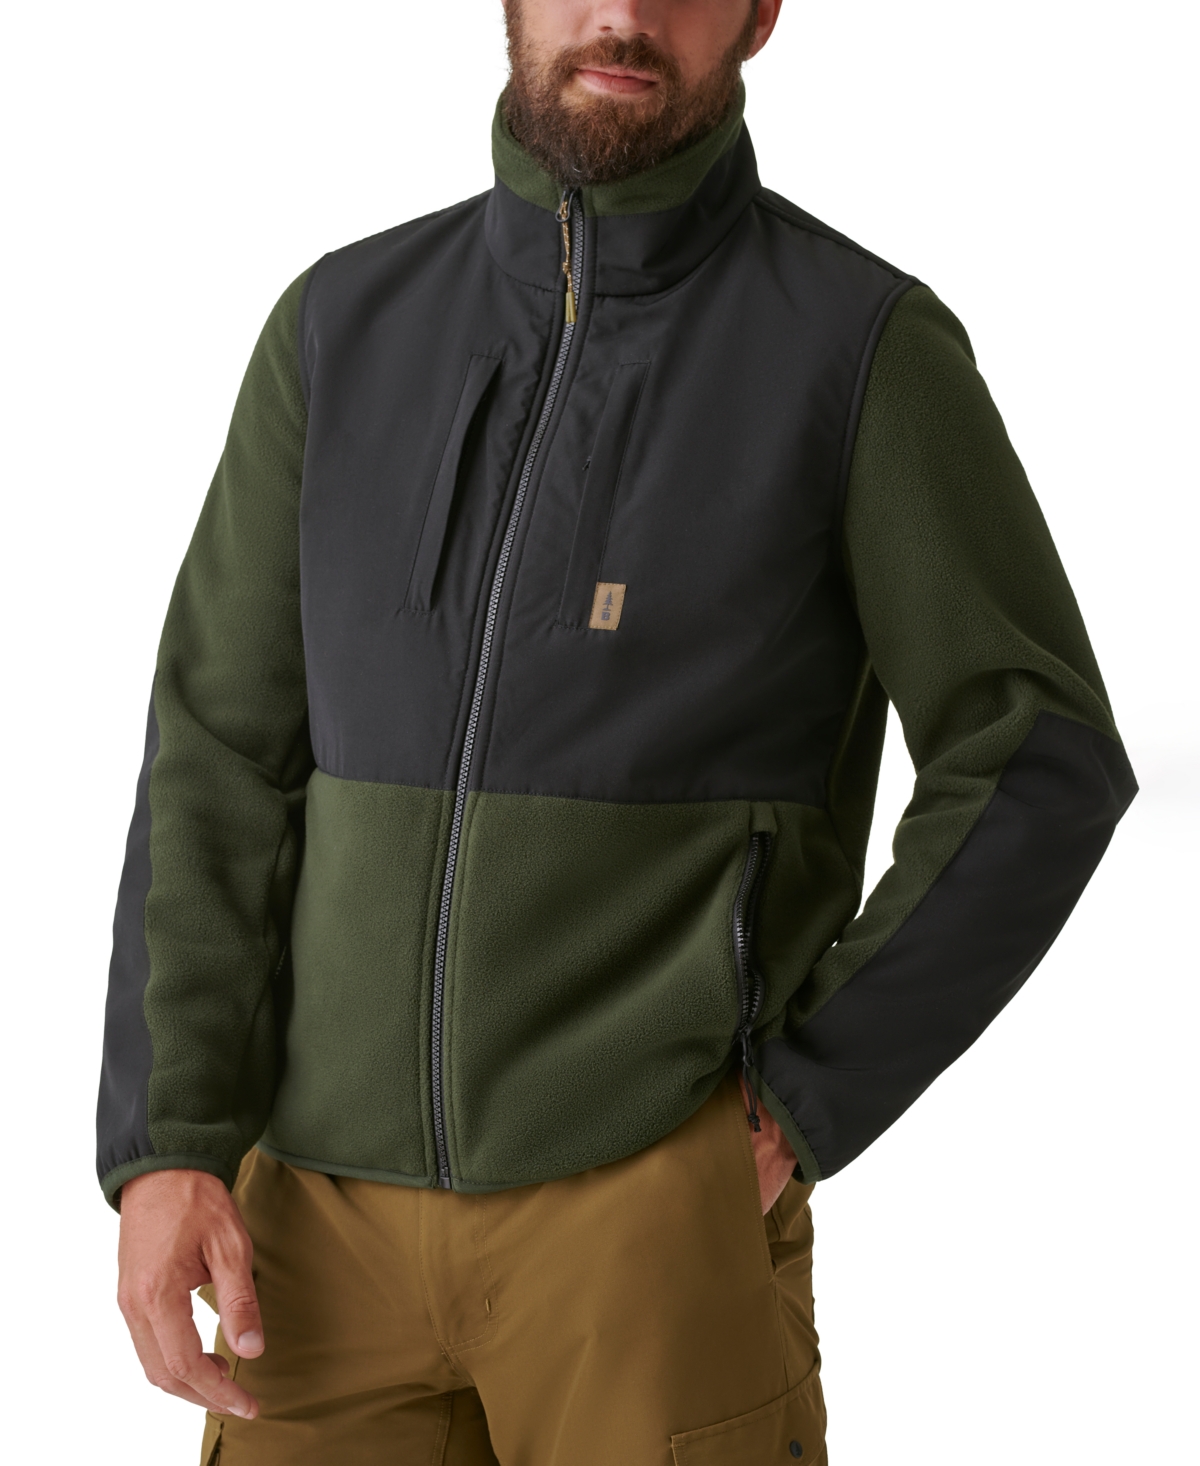 Bass Outdoor Men's B-Warm Insulated Full-Zip Fleece Jacket